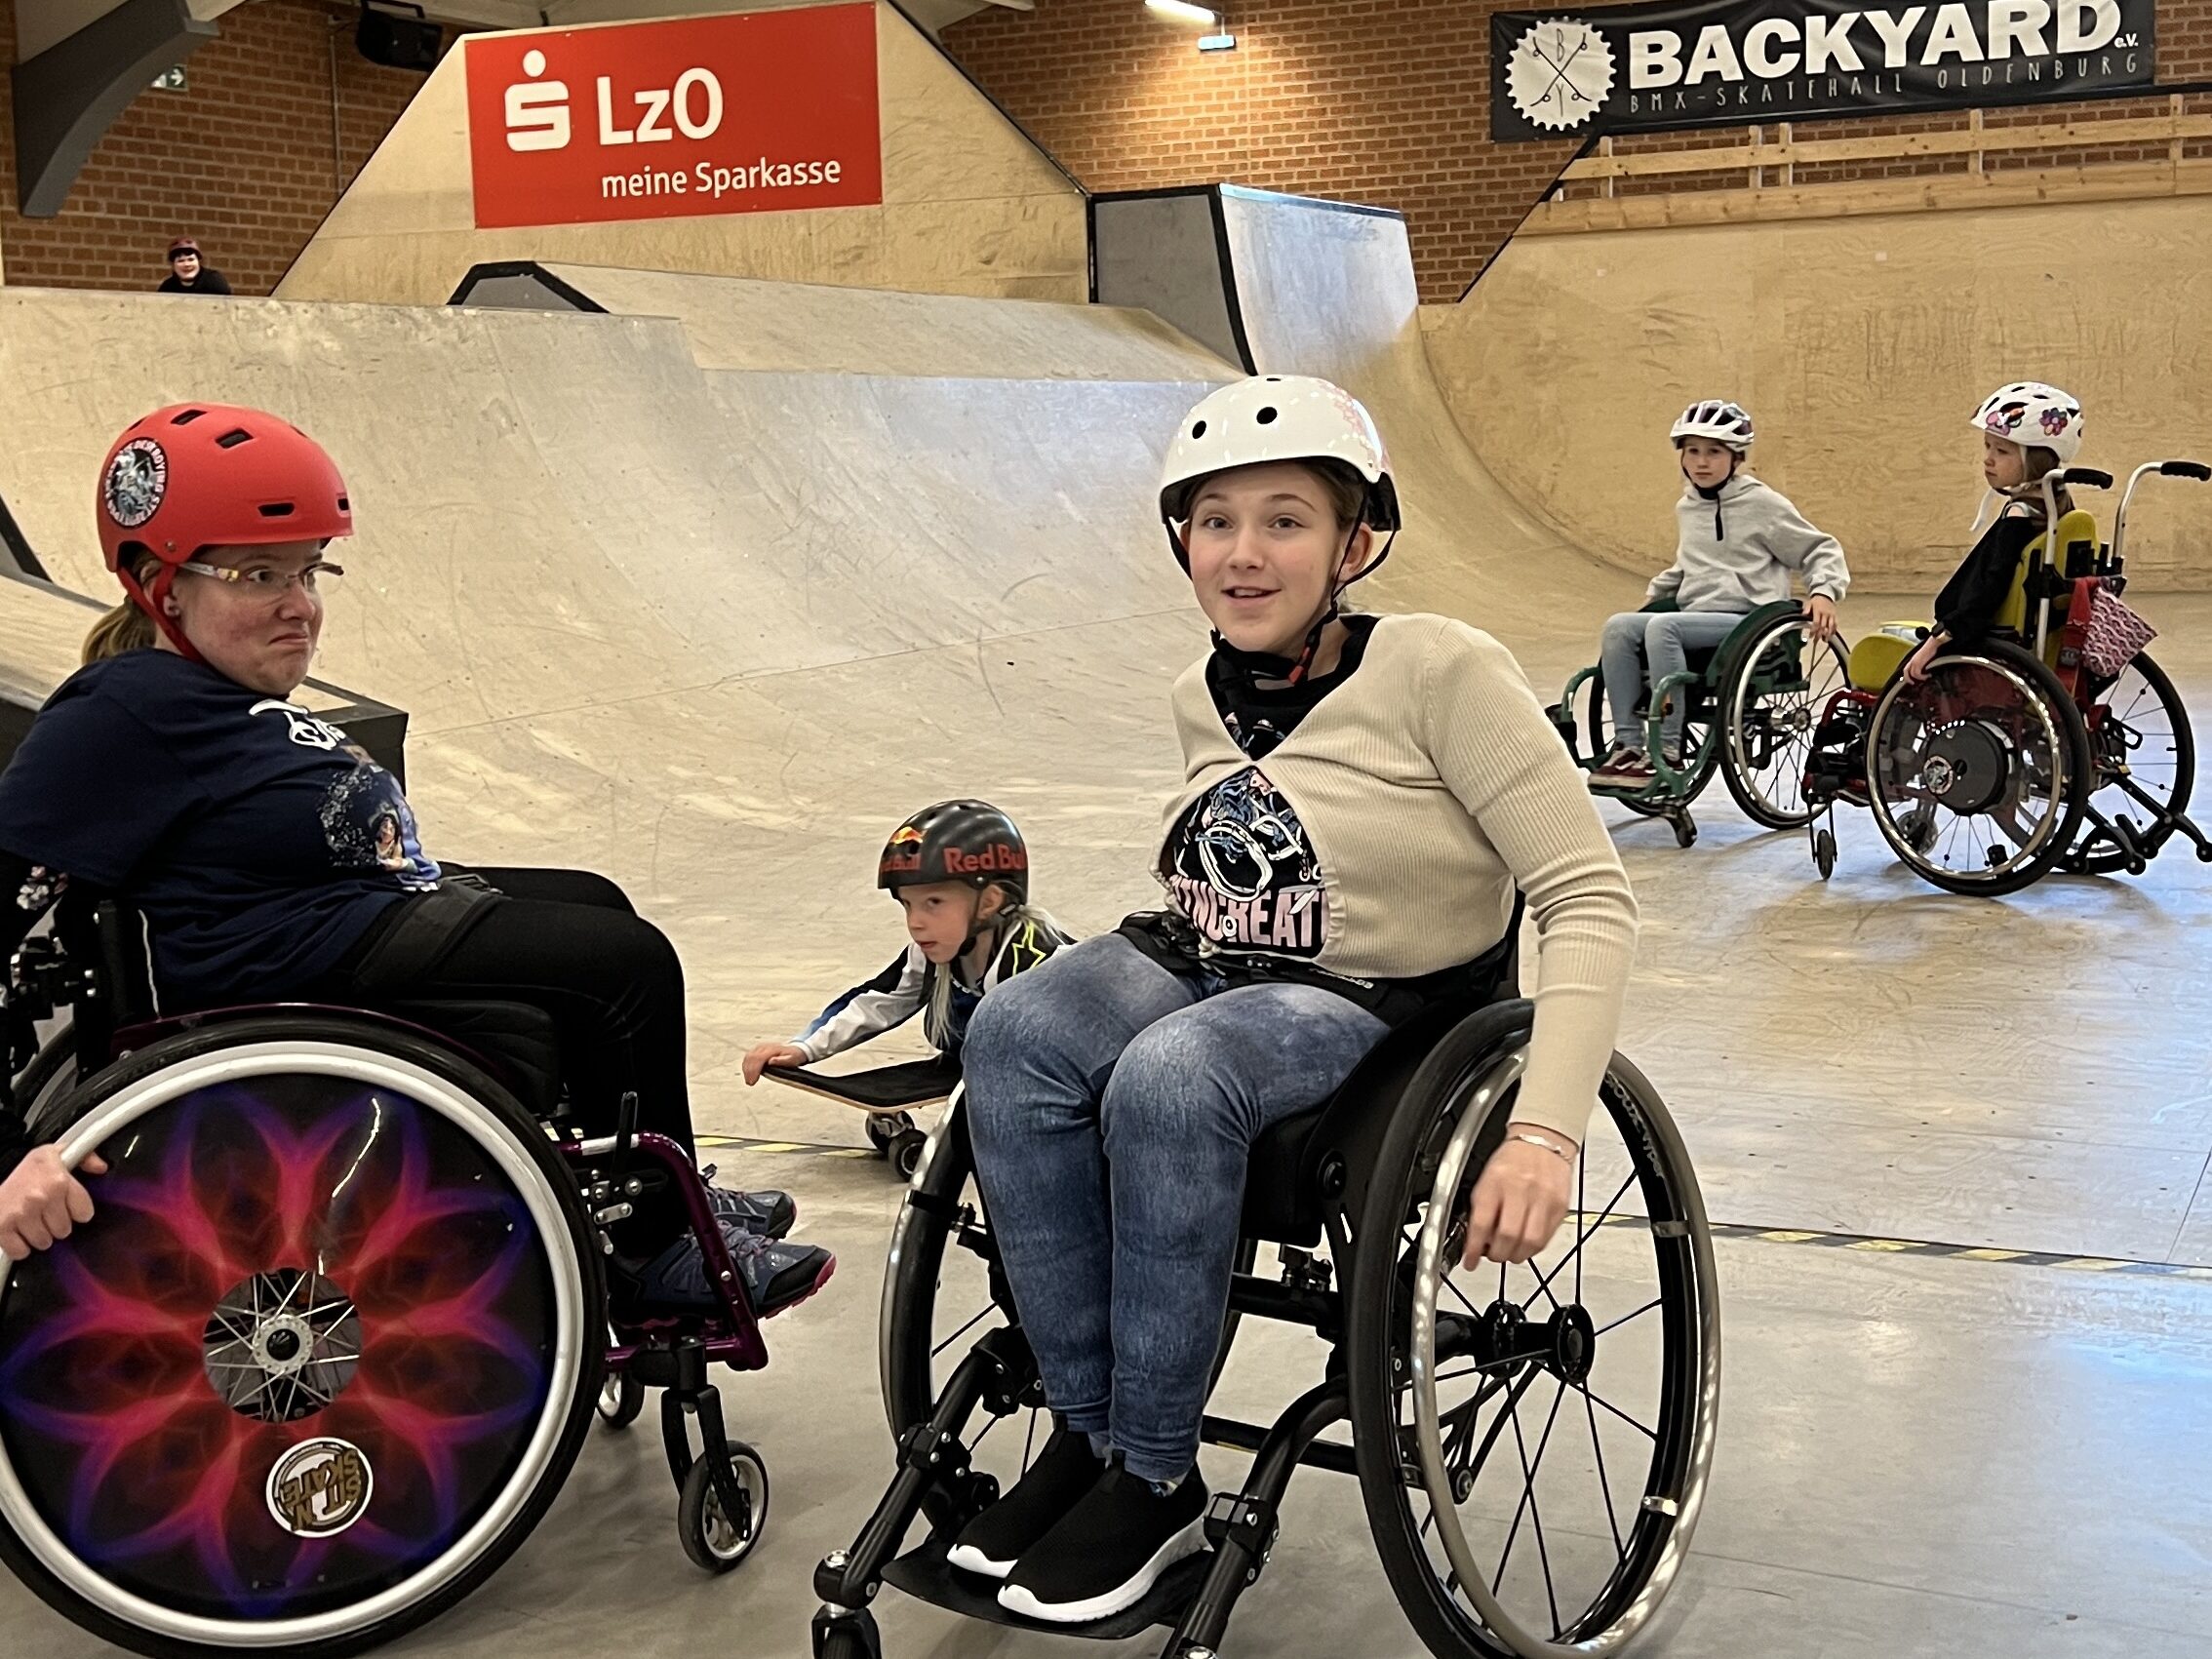 Kinder im Rollstuhl, sowie sitzend auf einem Skateboard in einer Skatehalle. 